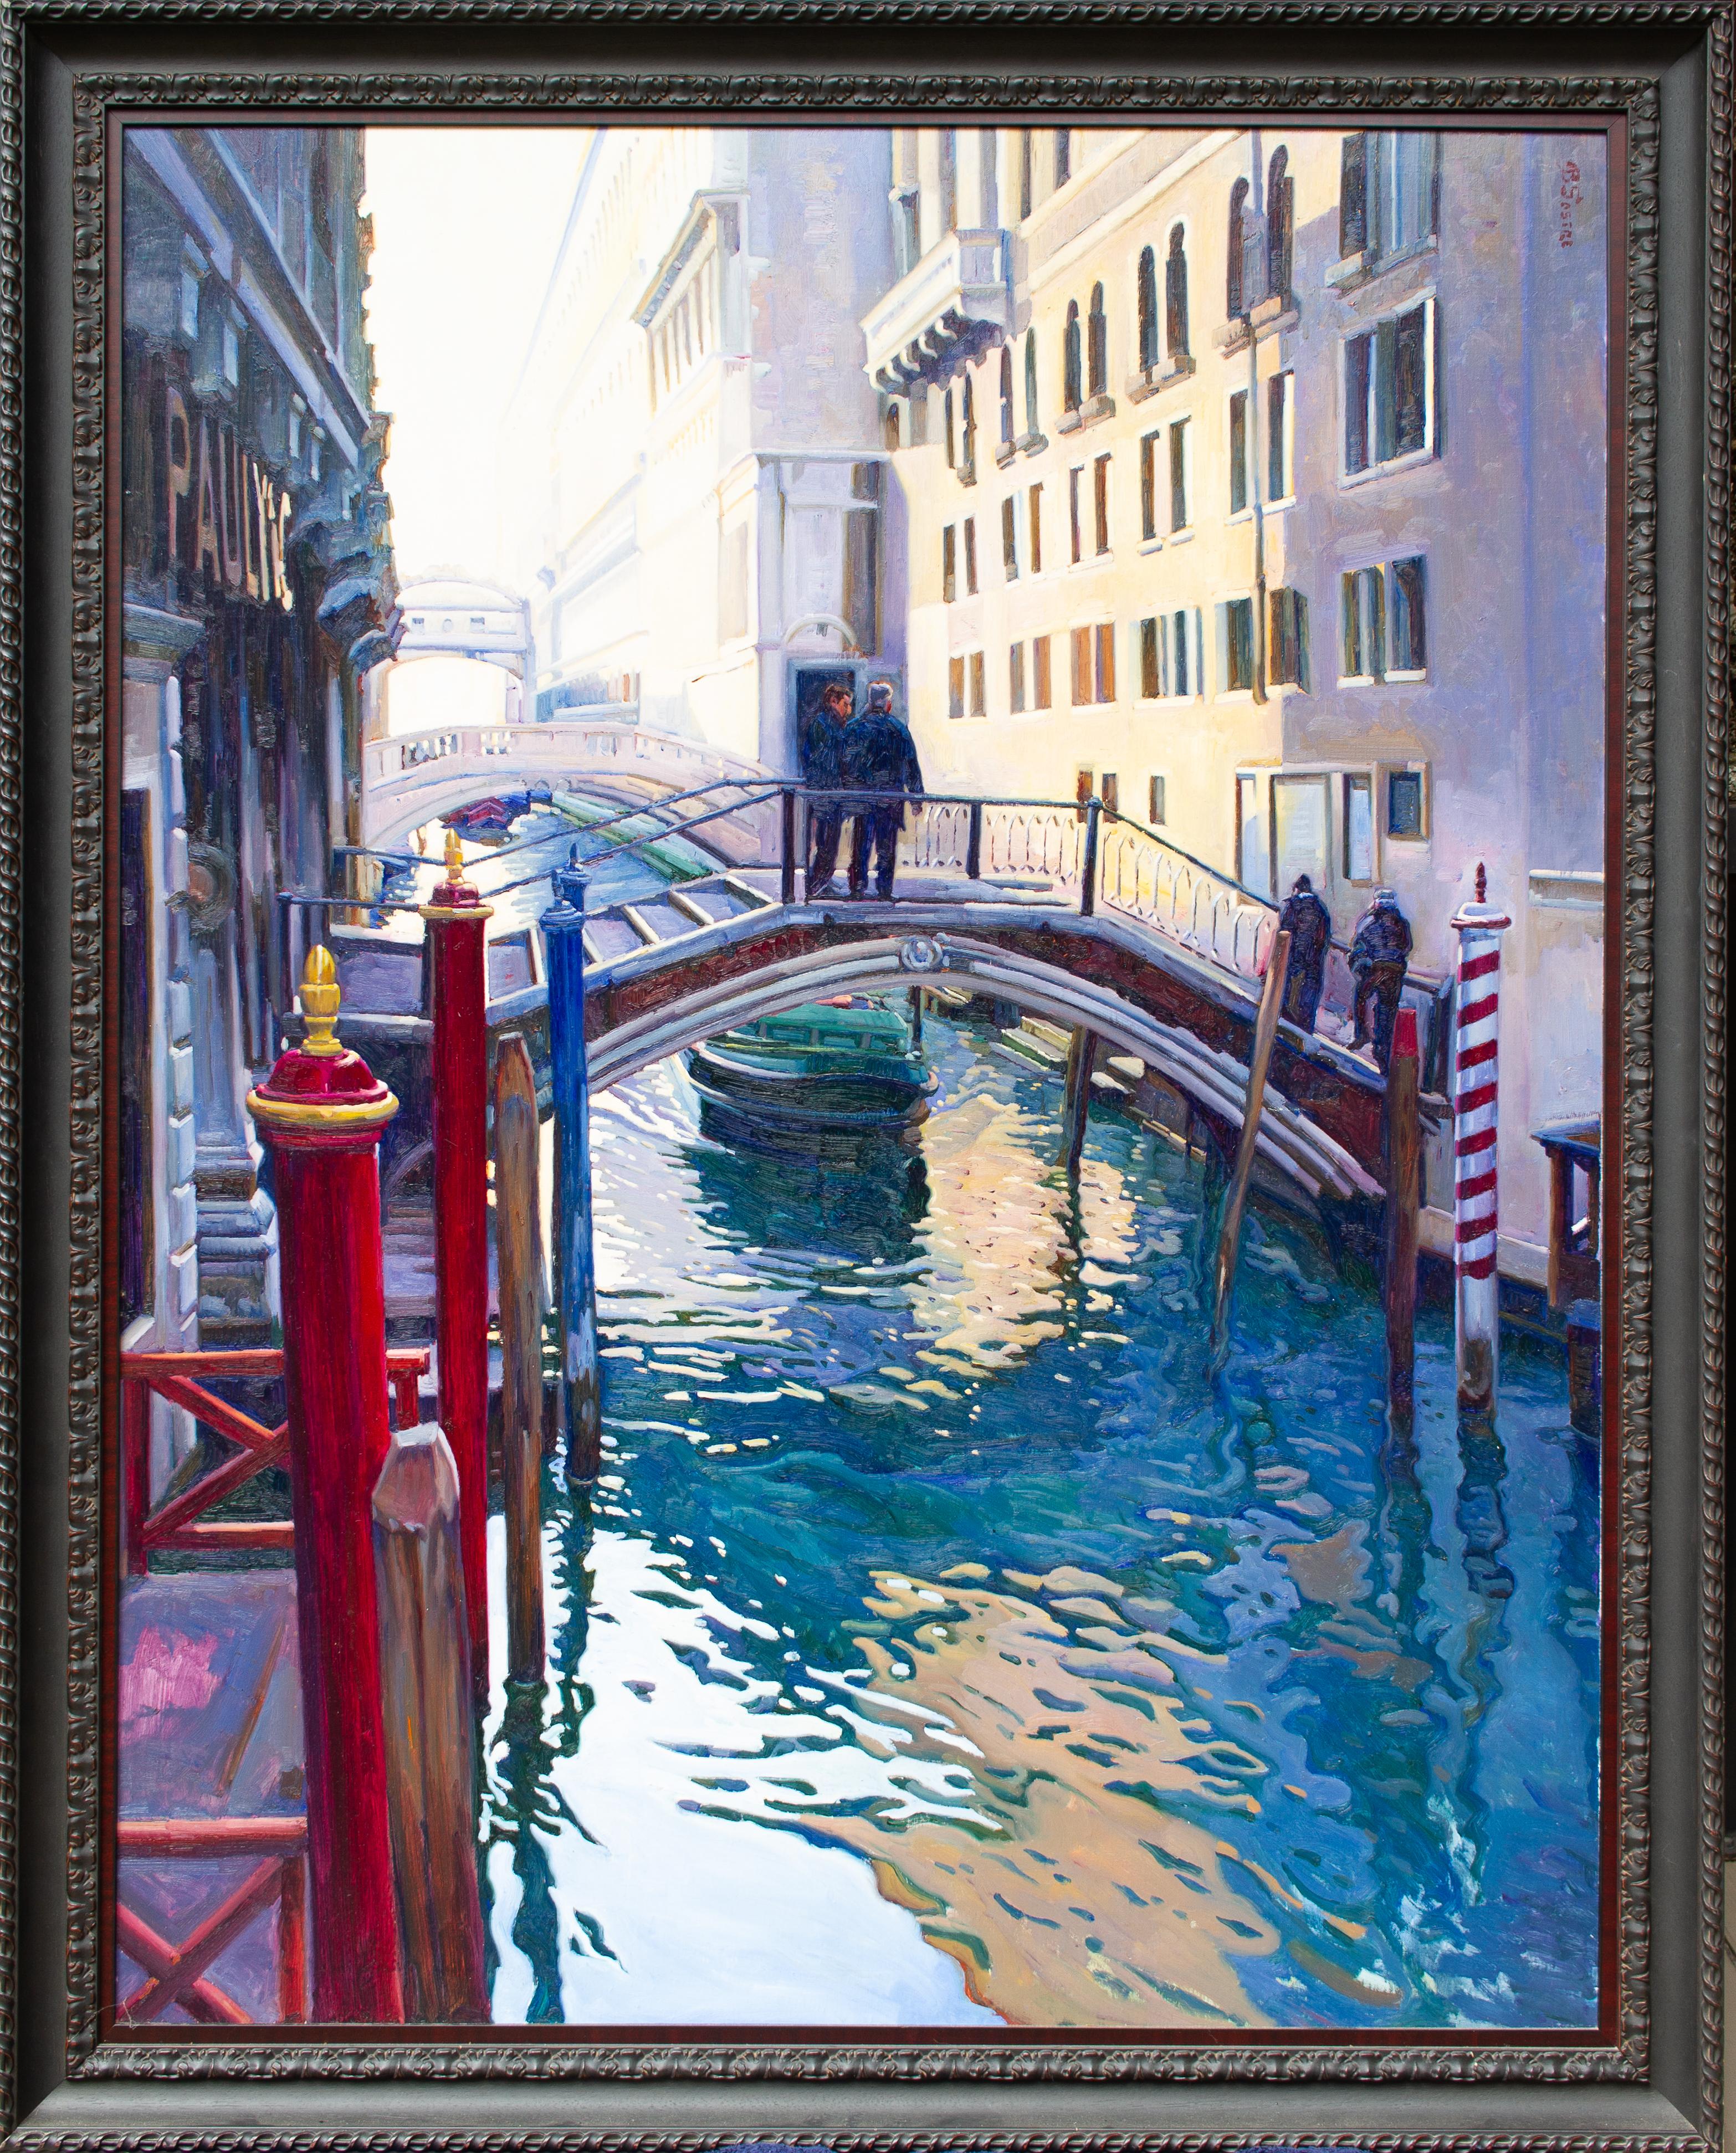 Venecia - Painting by Bartolome Sastre